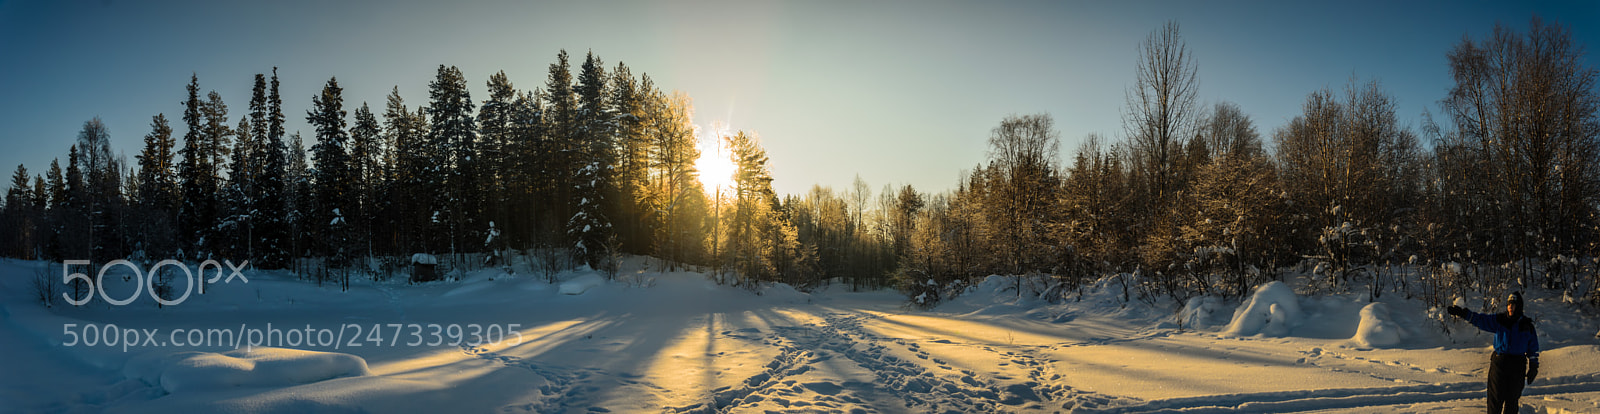 Nikon D7000 sample photo. A winter panorama photography